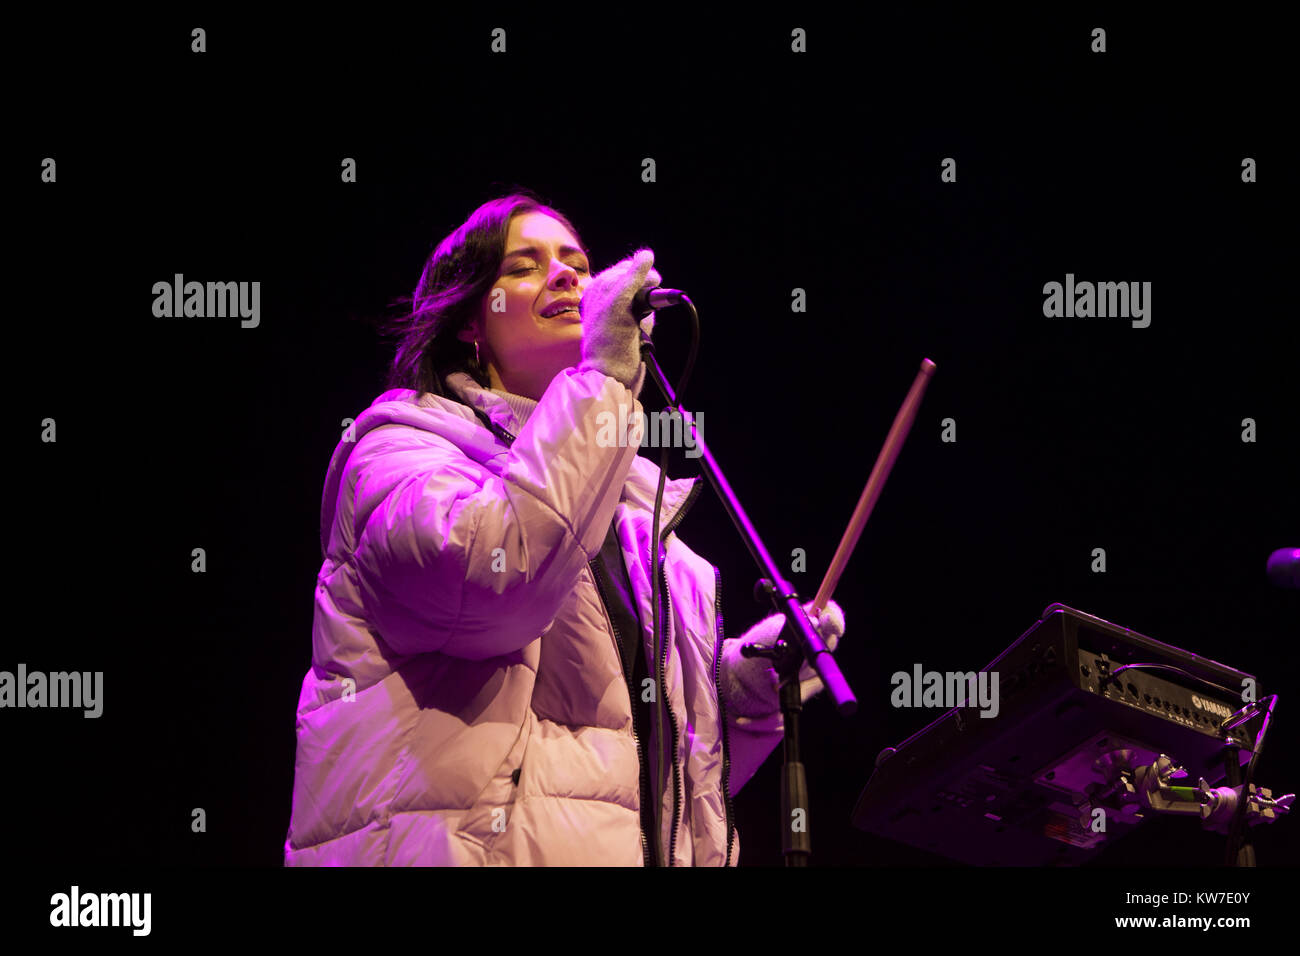 Edimbourg, Ecosse le 31 décembre 2017. Nina Nesbitt sur scène par Princess Gardens dans le cadre d'Édimbourg Hogmanay. Pako Mera/Alamy Live News Banque D'Images